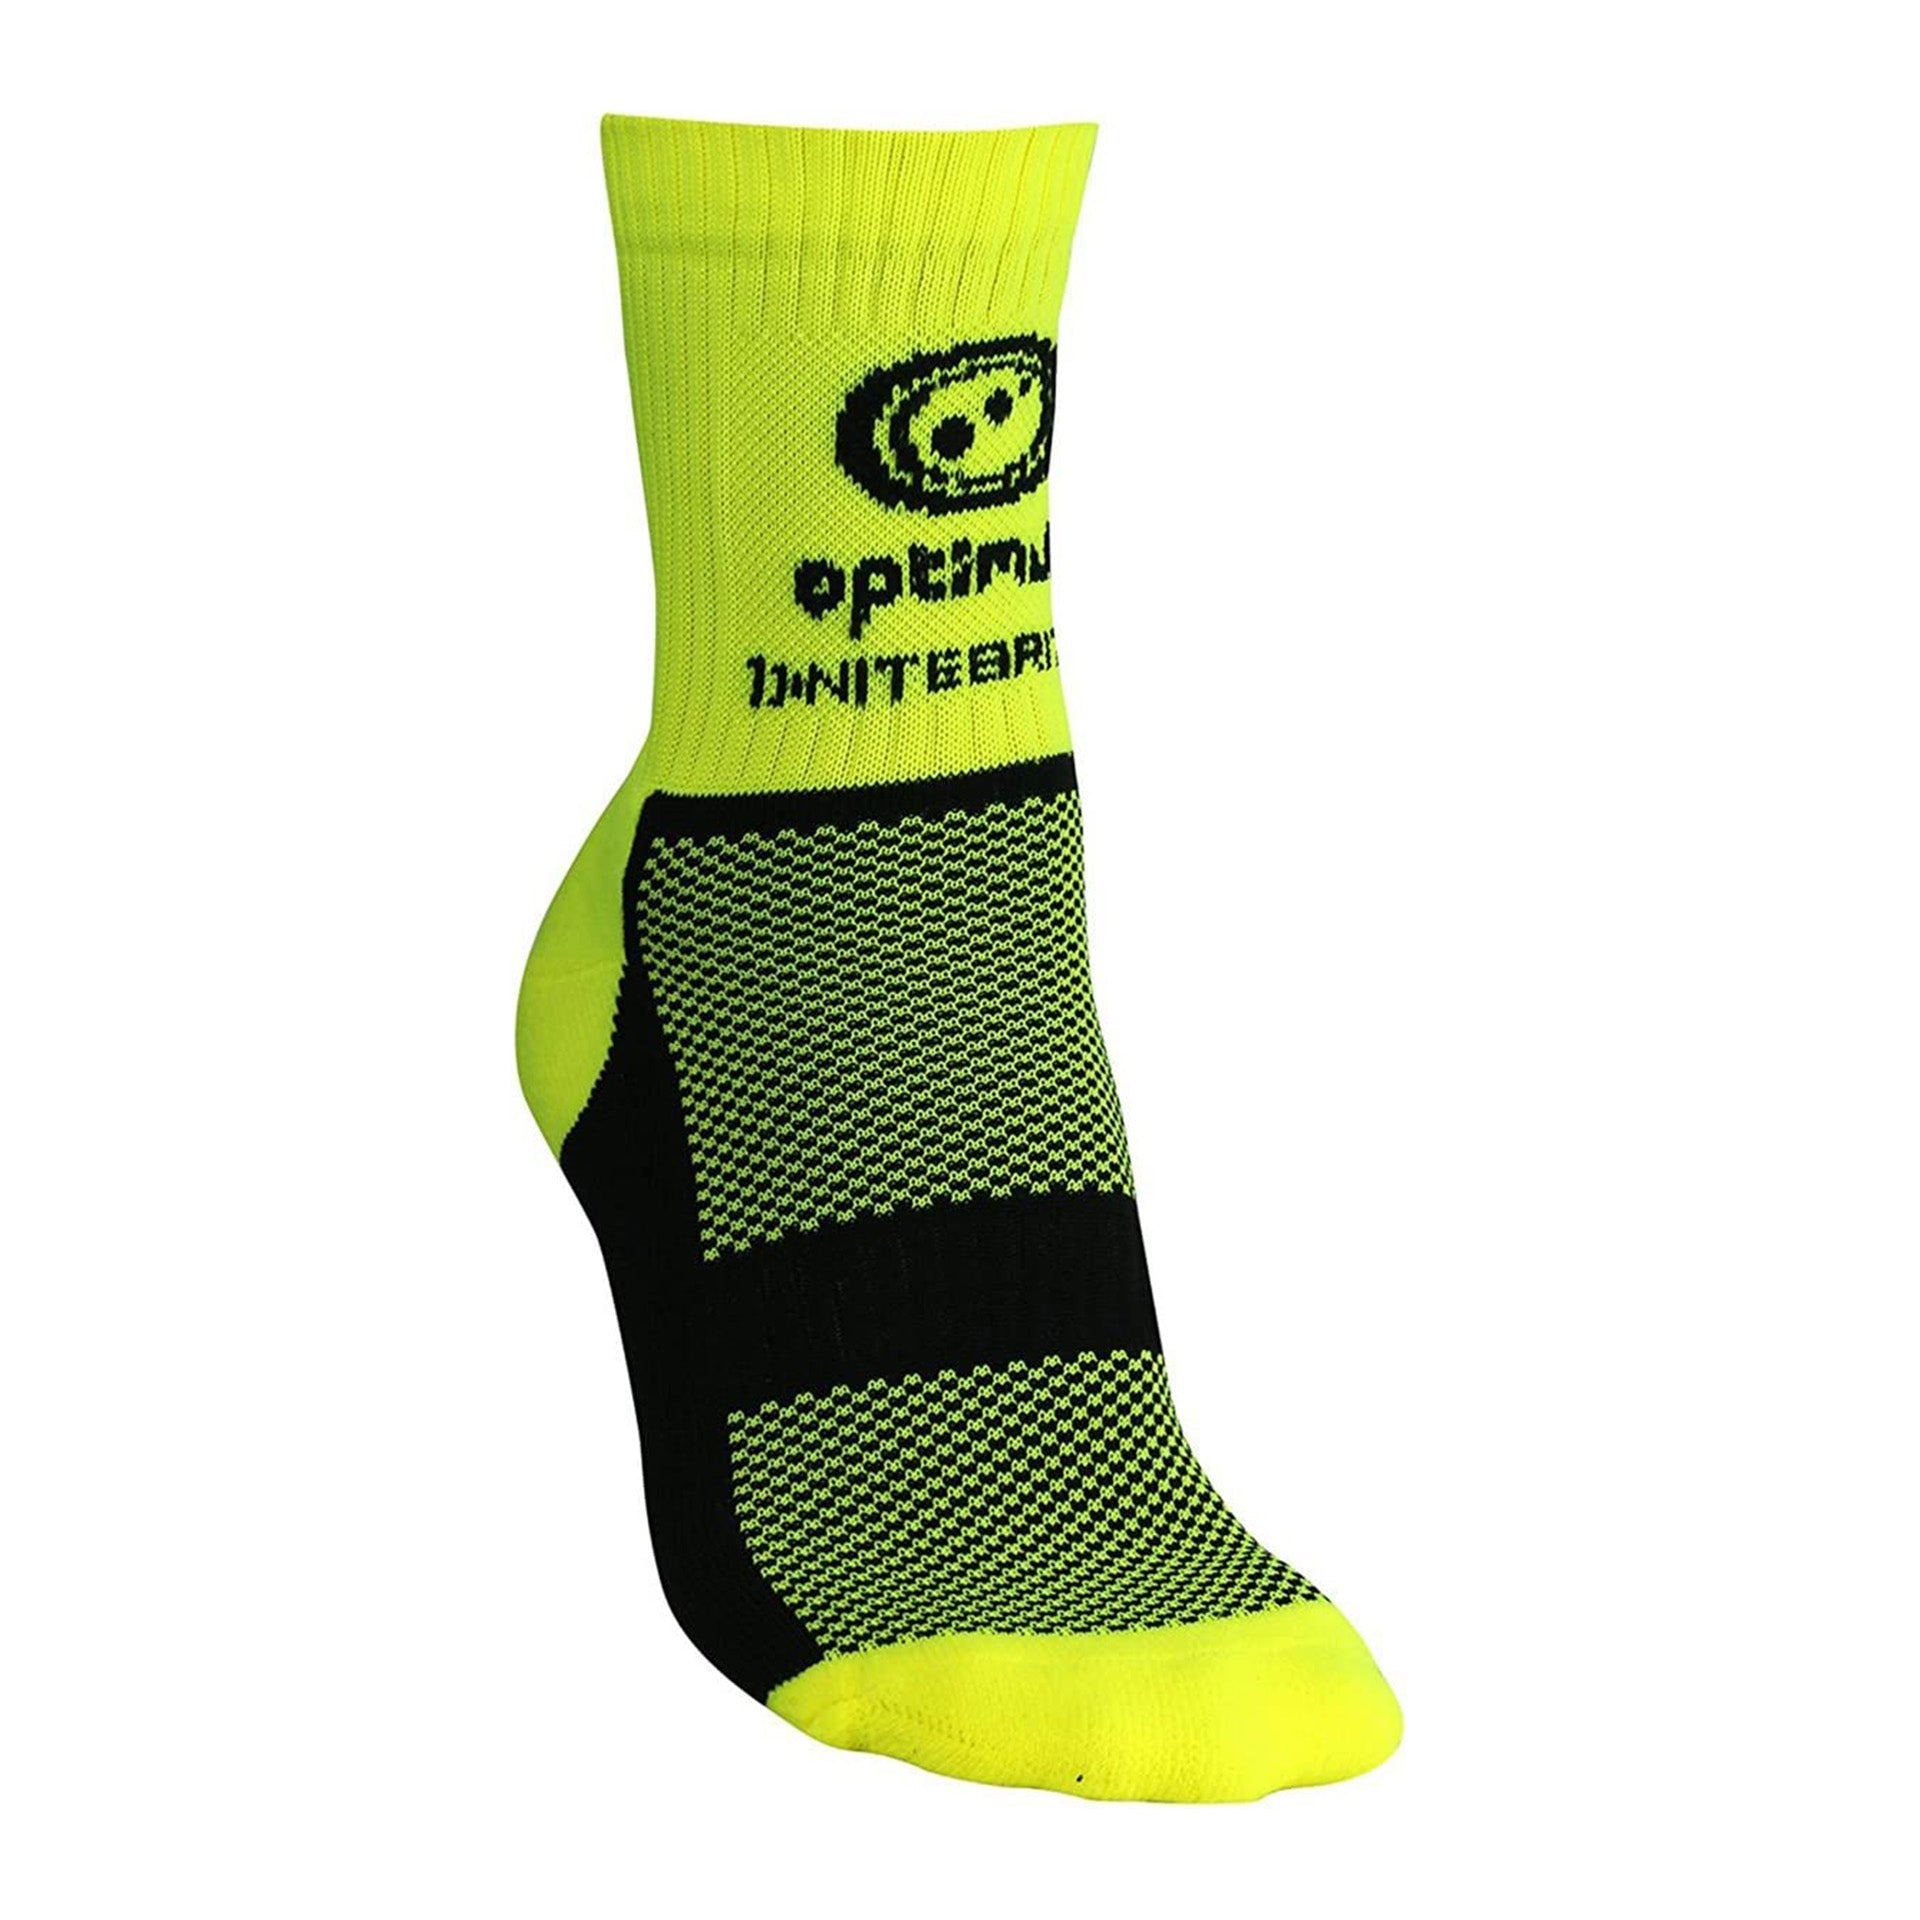 Nitebrite Socks Fluro Yellow - Optimum